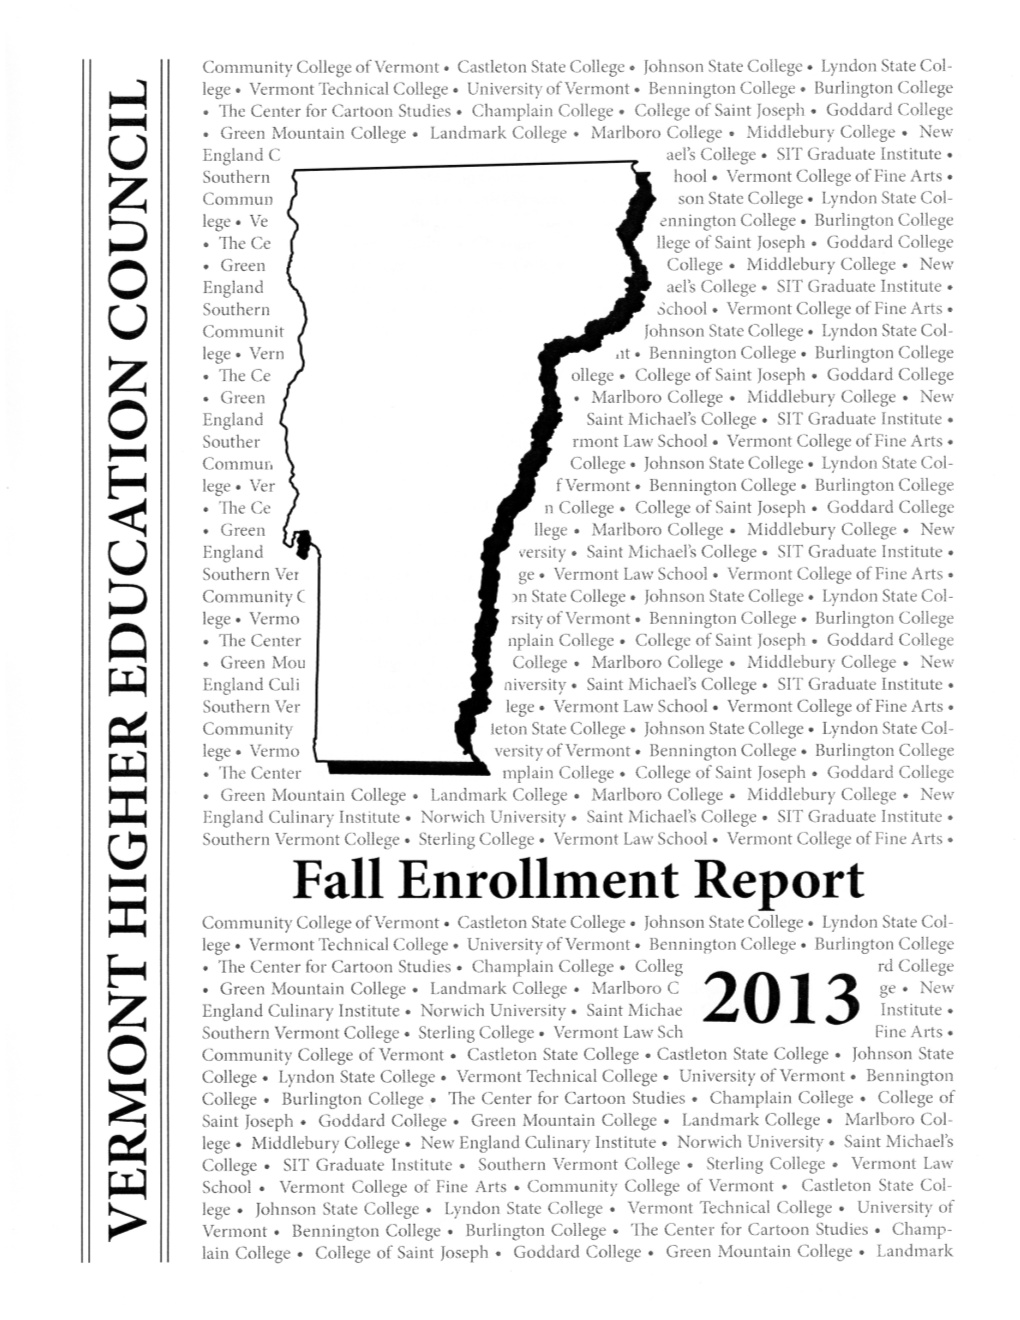 2013 Fall Enrollment Report